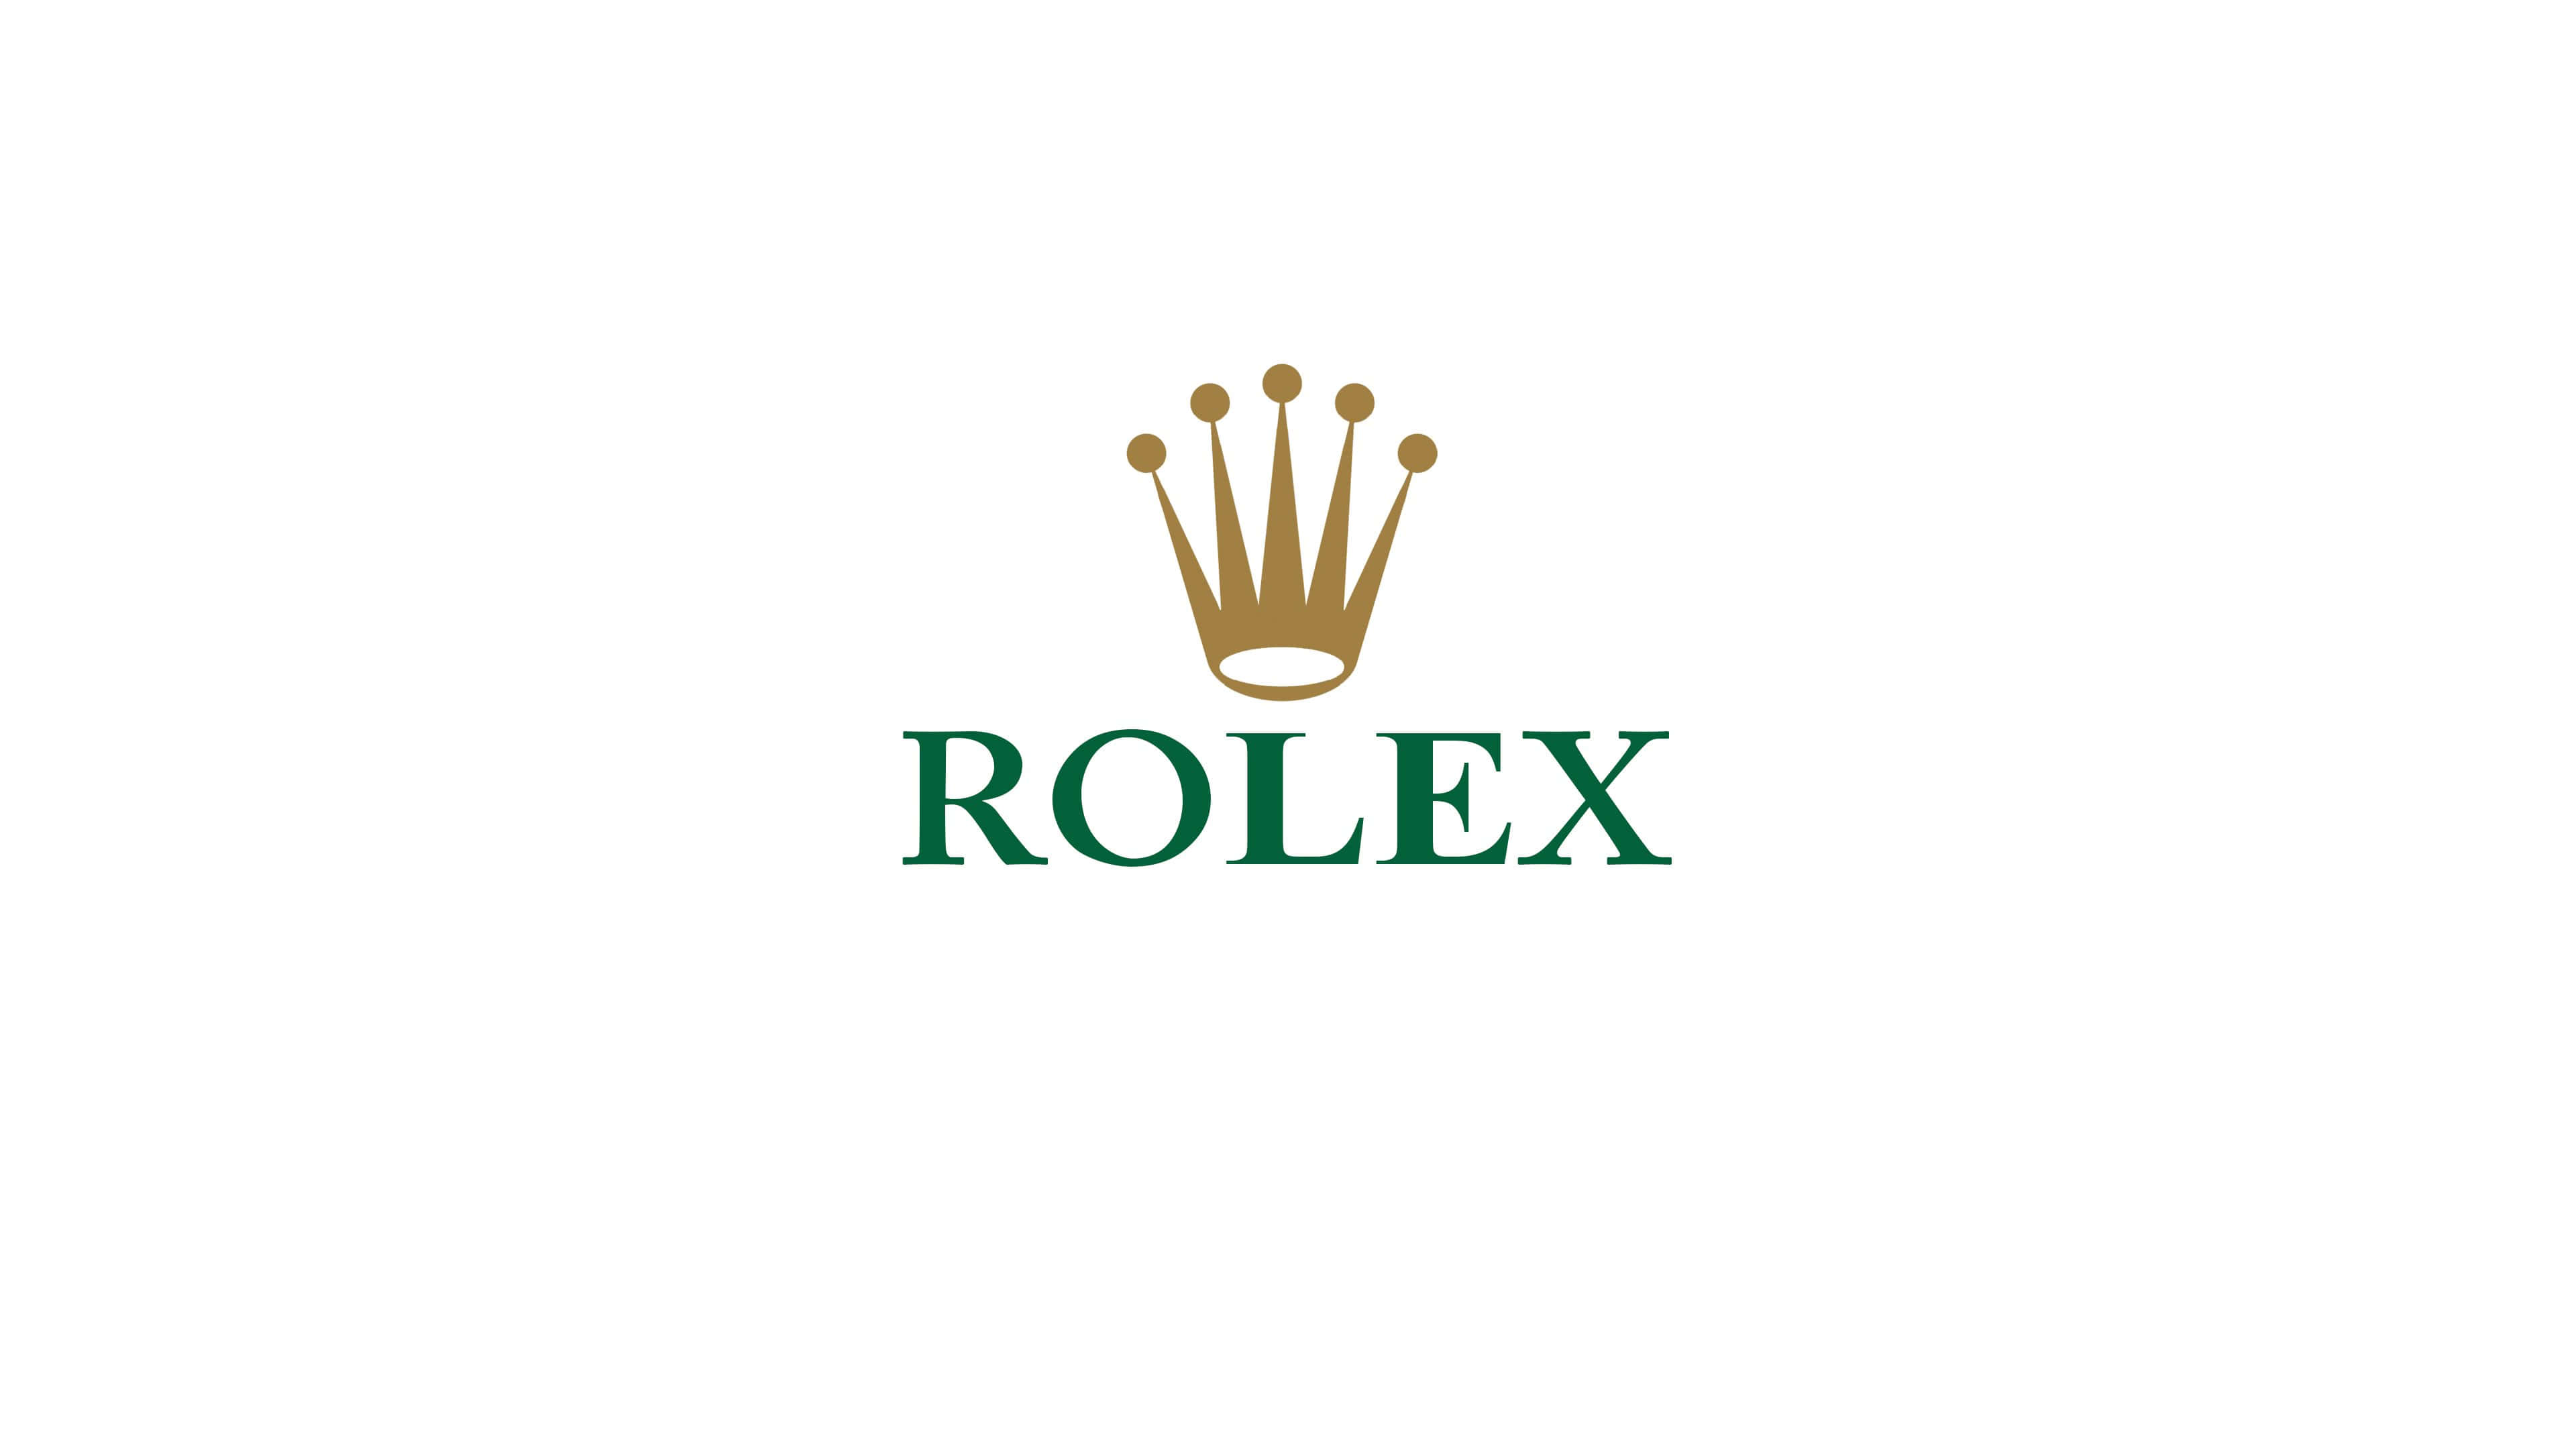 Rolex Wallpapers - Top 30 Best Rolex Wallpapers Download